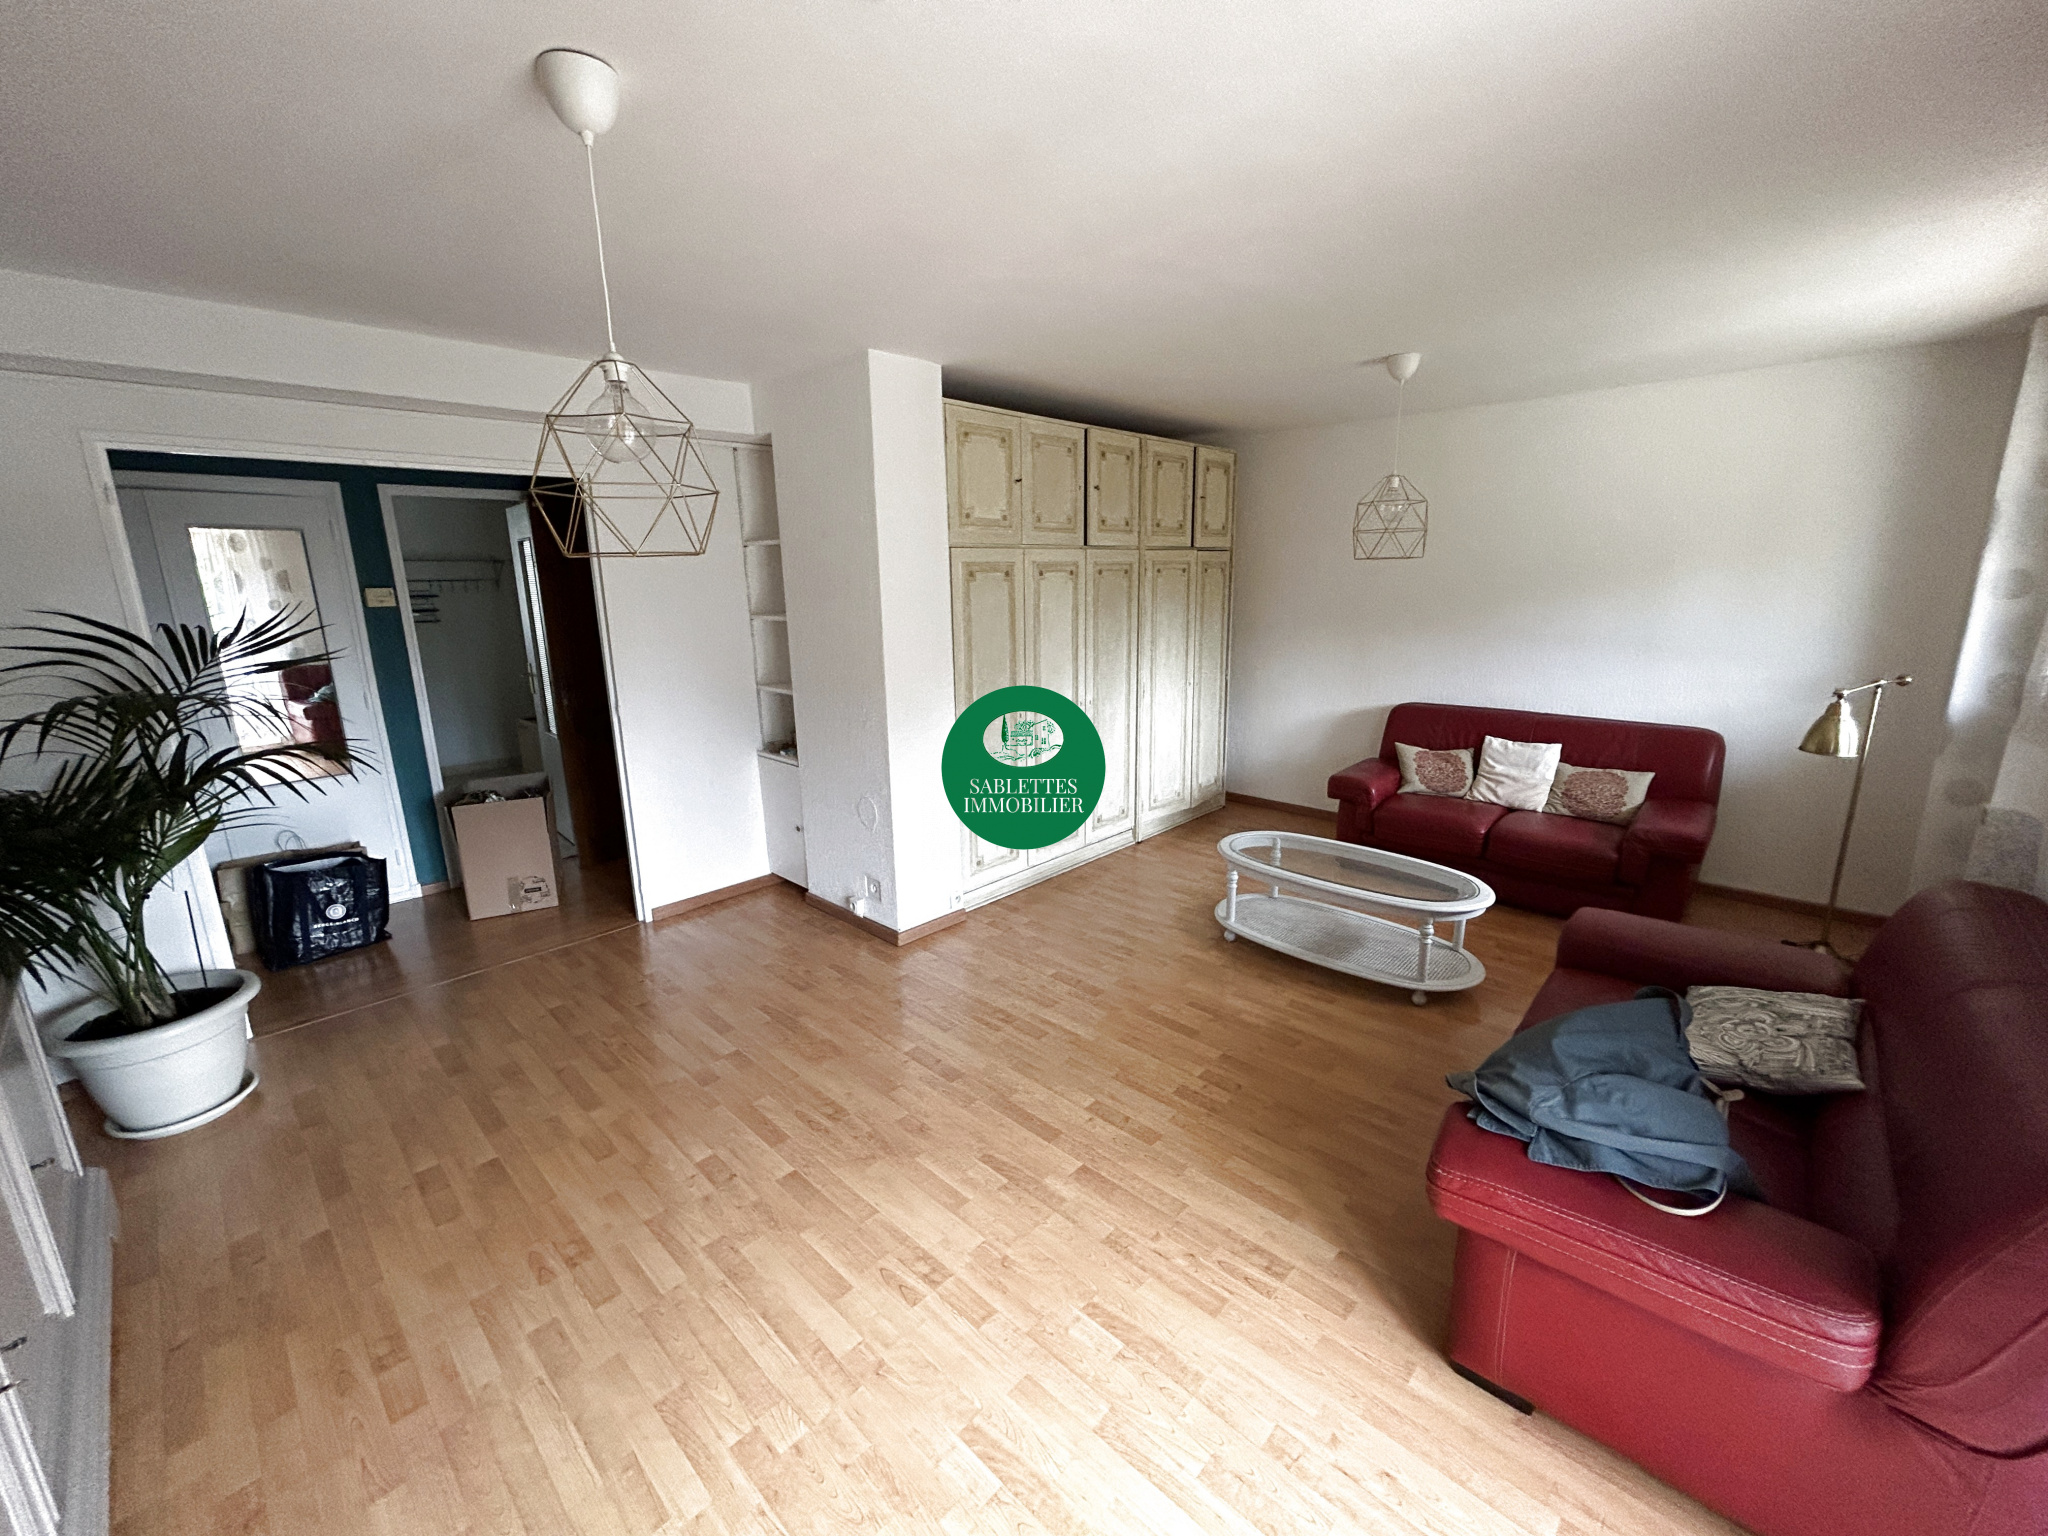 Vente Appartement 65m² 3 Pièces à La Seyne-sur-Mer (83500) - Sablettes Immobilier